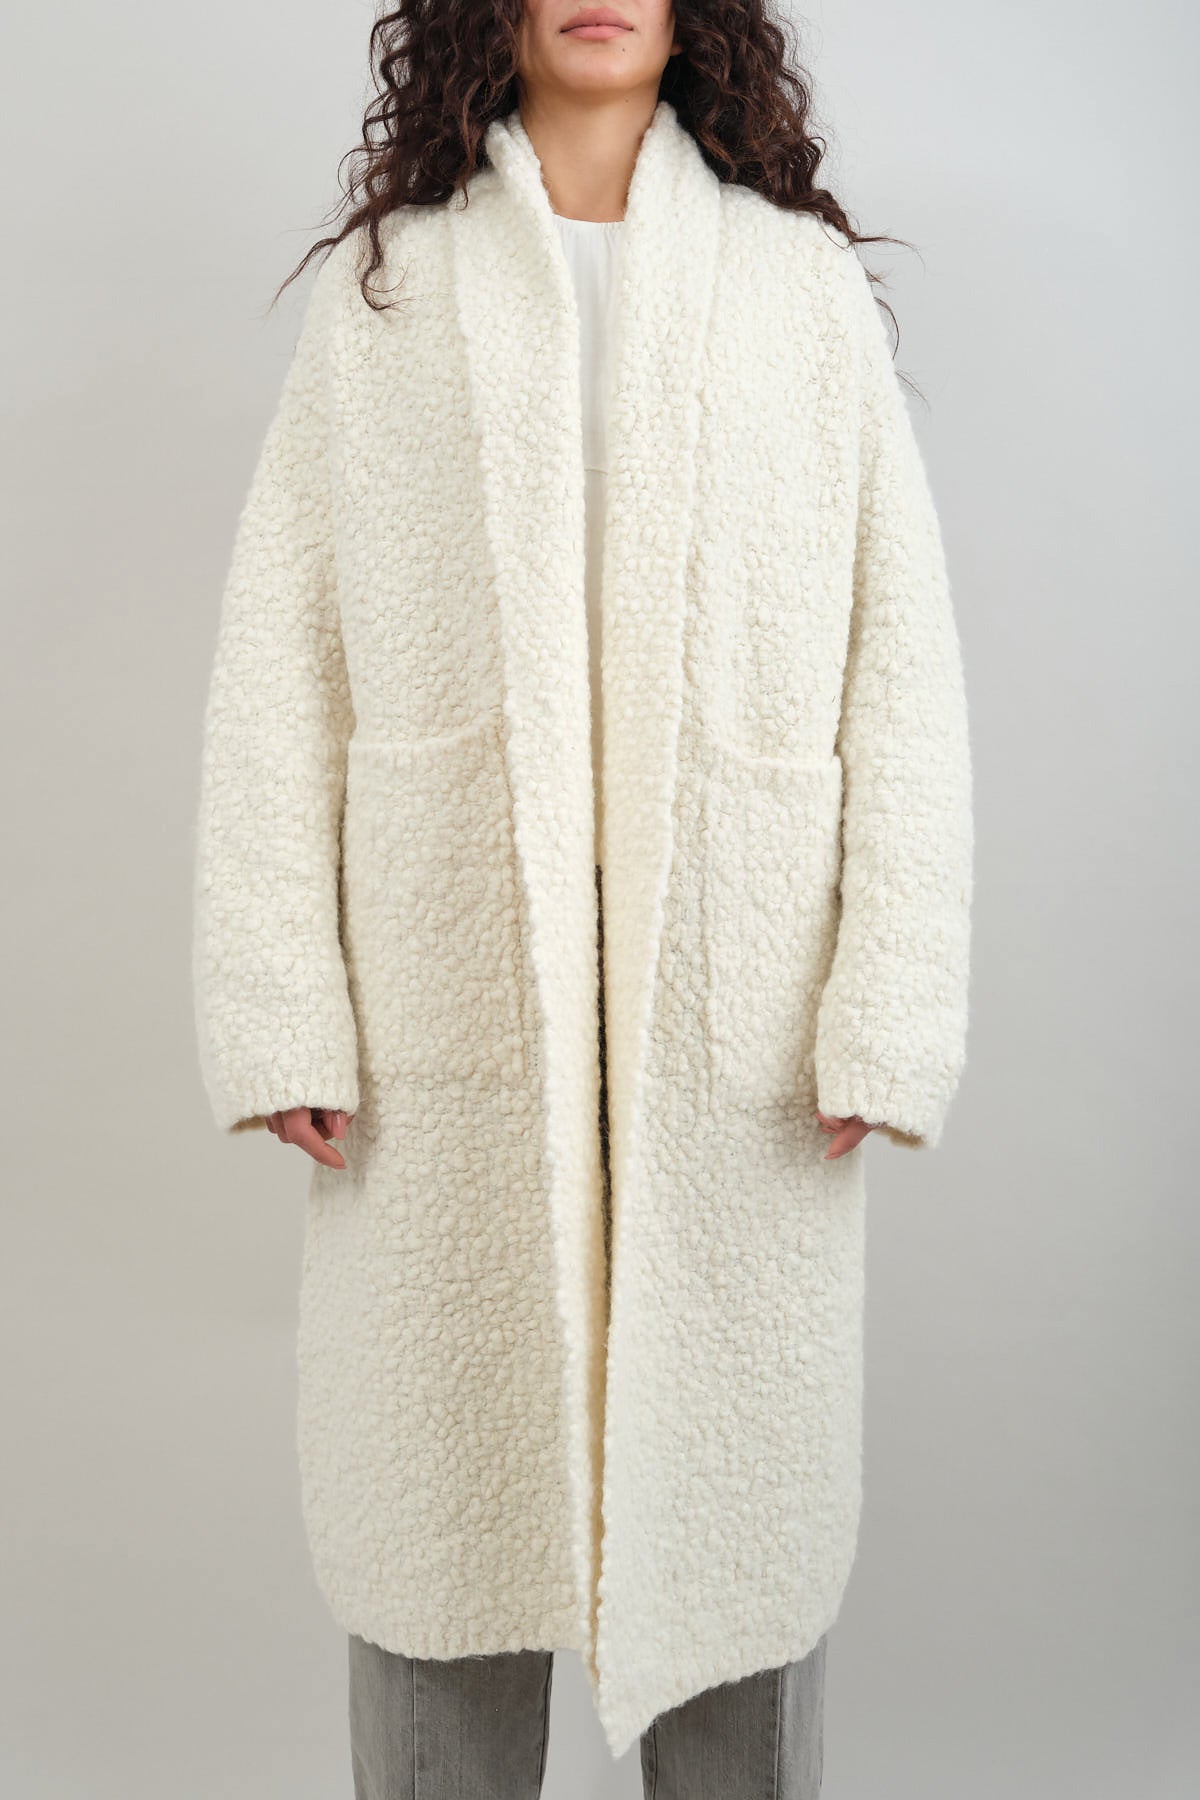 Lauren Manoogian Alpaca and Merino Wool Berber Coat